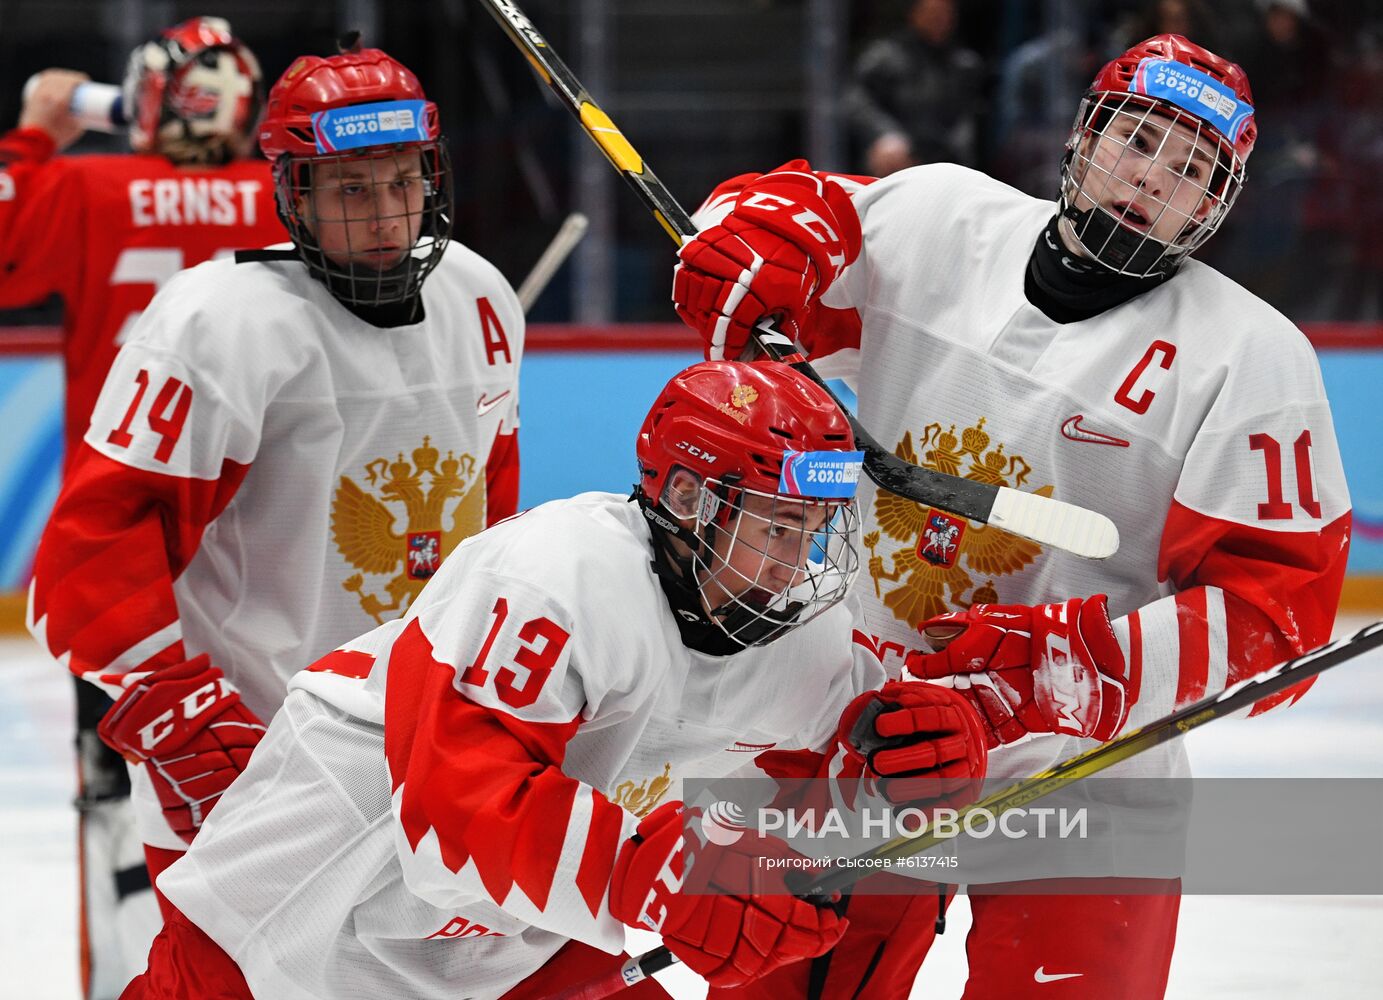 Зимняя юношеская Олимпиада  2020. Хоккей. Юноши. Матч Канада - Россия